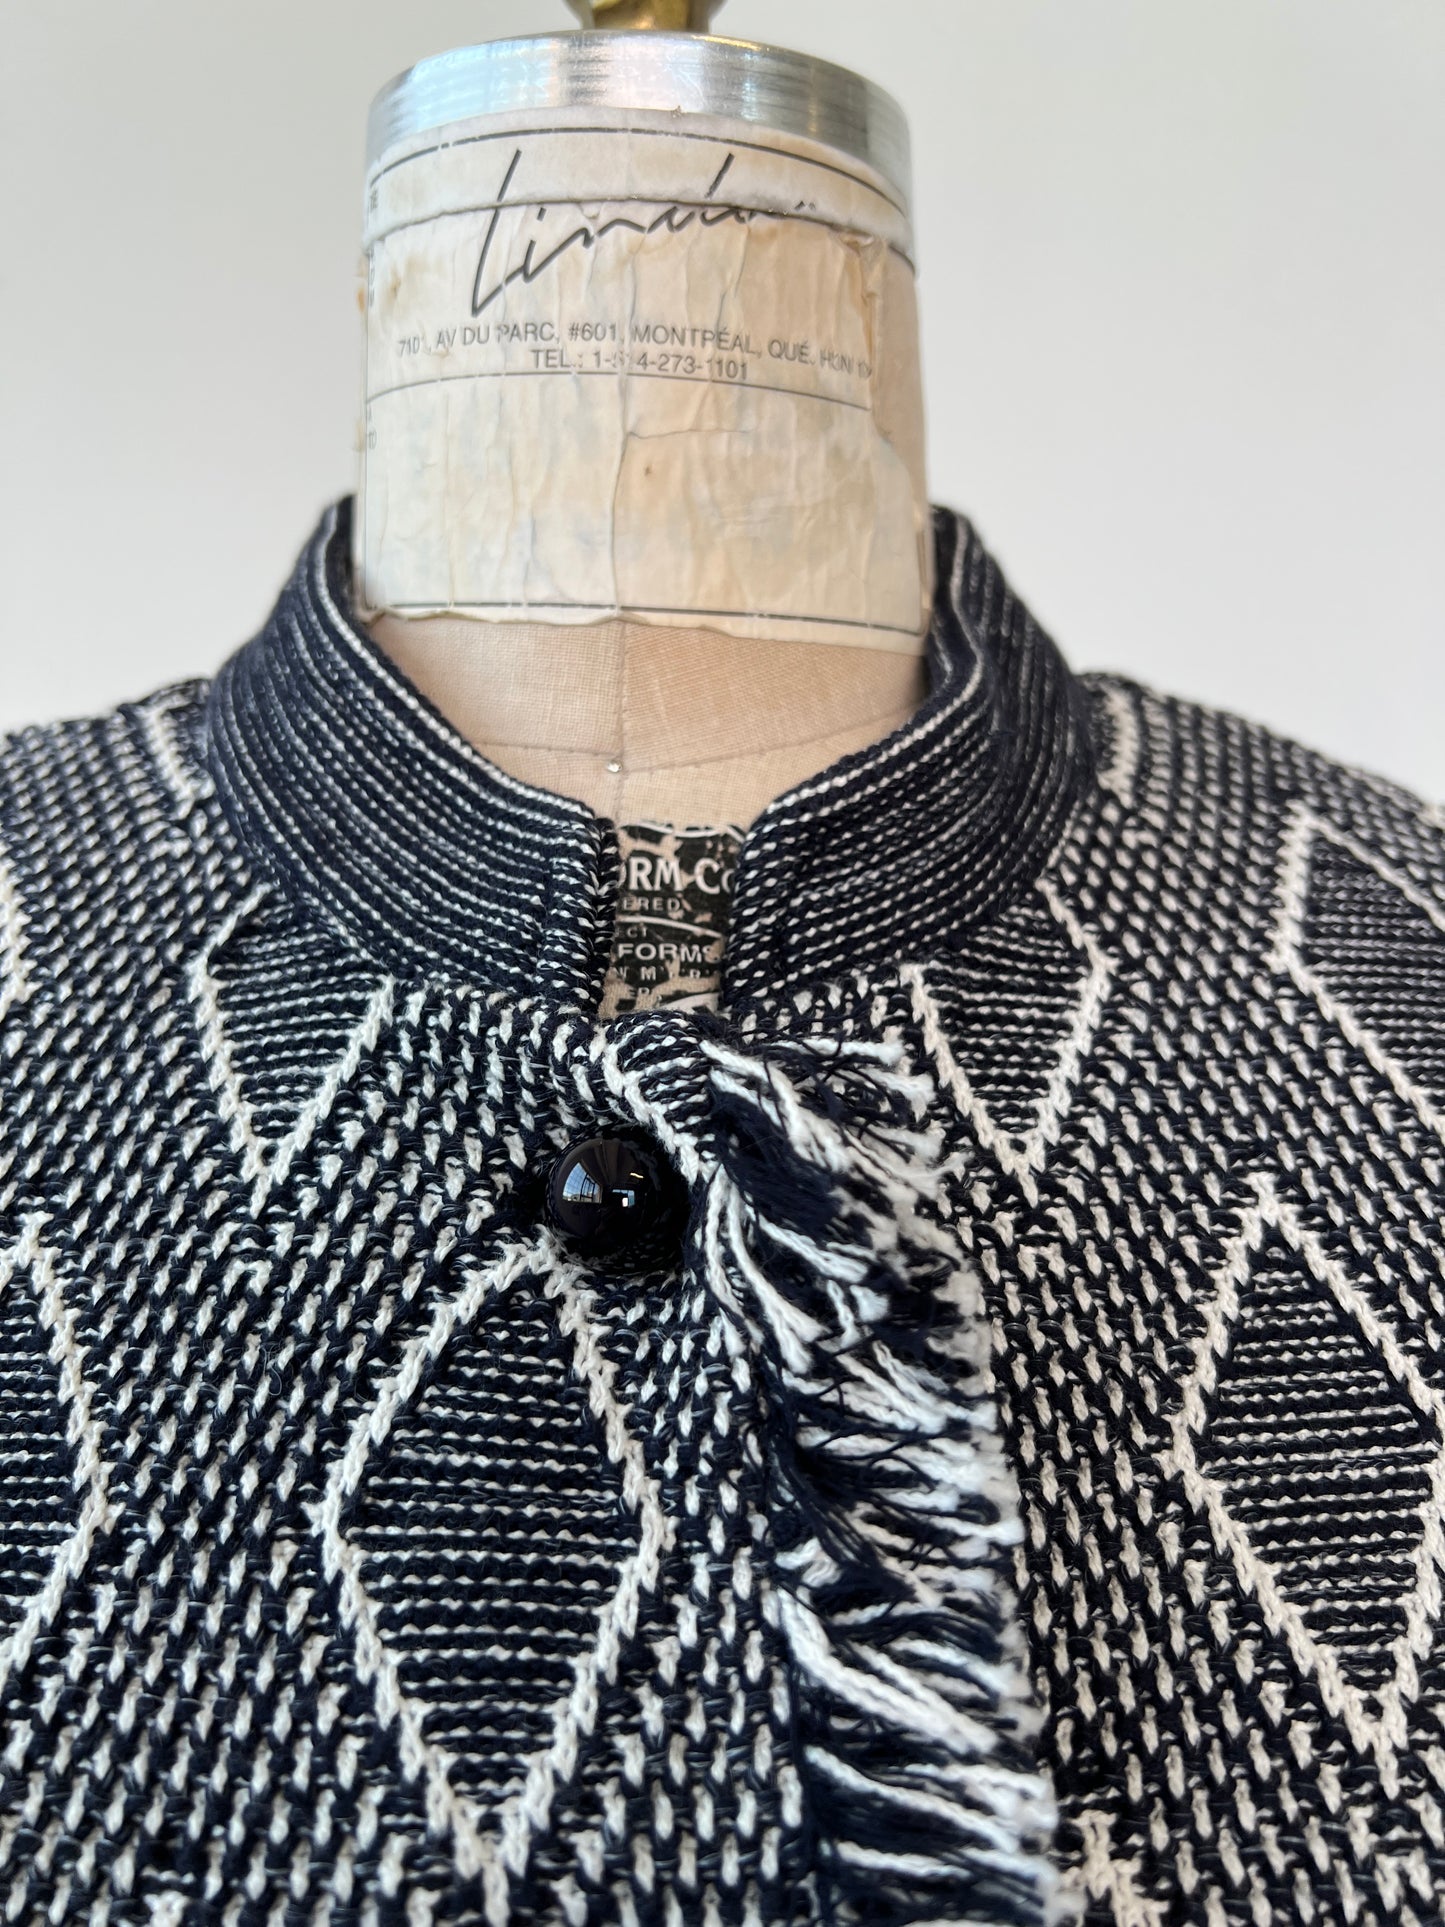 Veste en tricot jacquard marine et blanc (L)